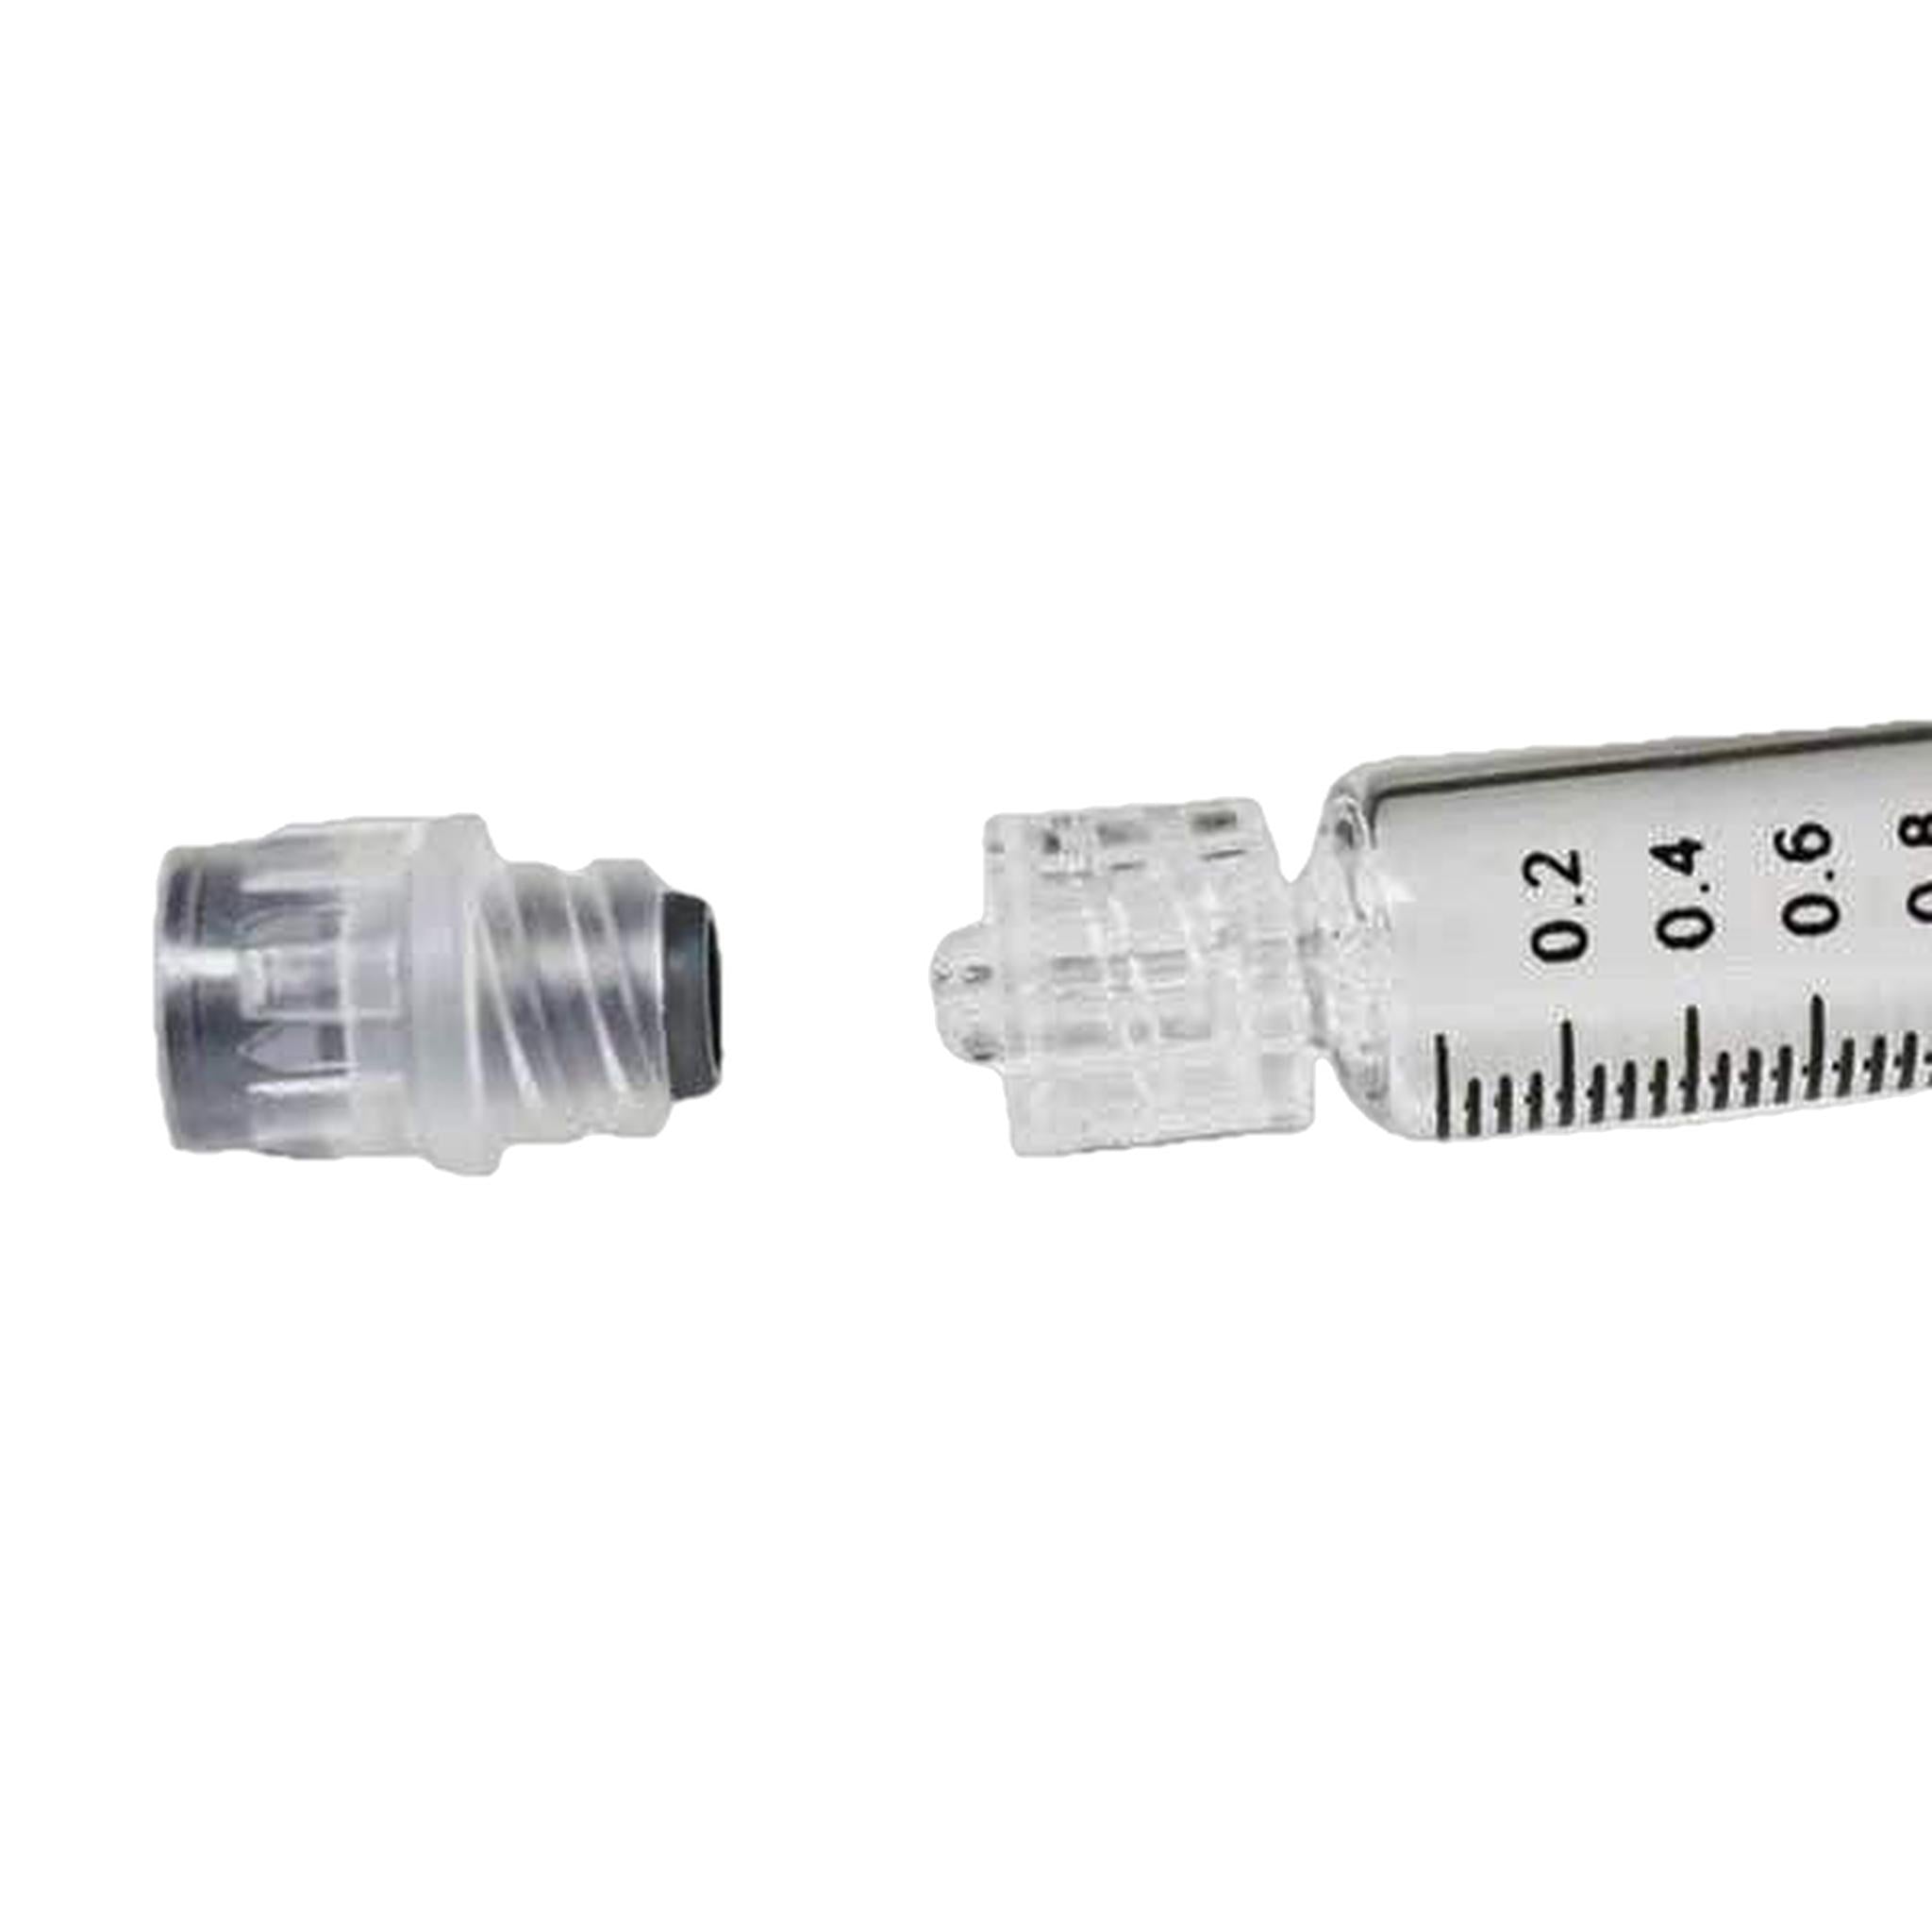 1mL Luer Lock Glass Syringe w/o Needle-Syringe-Vape Pens Wholesale